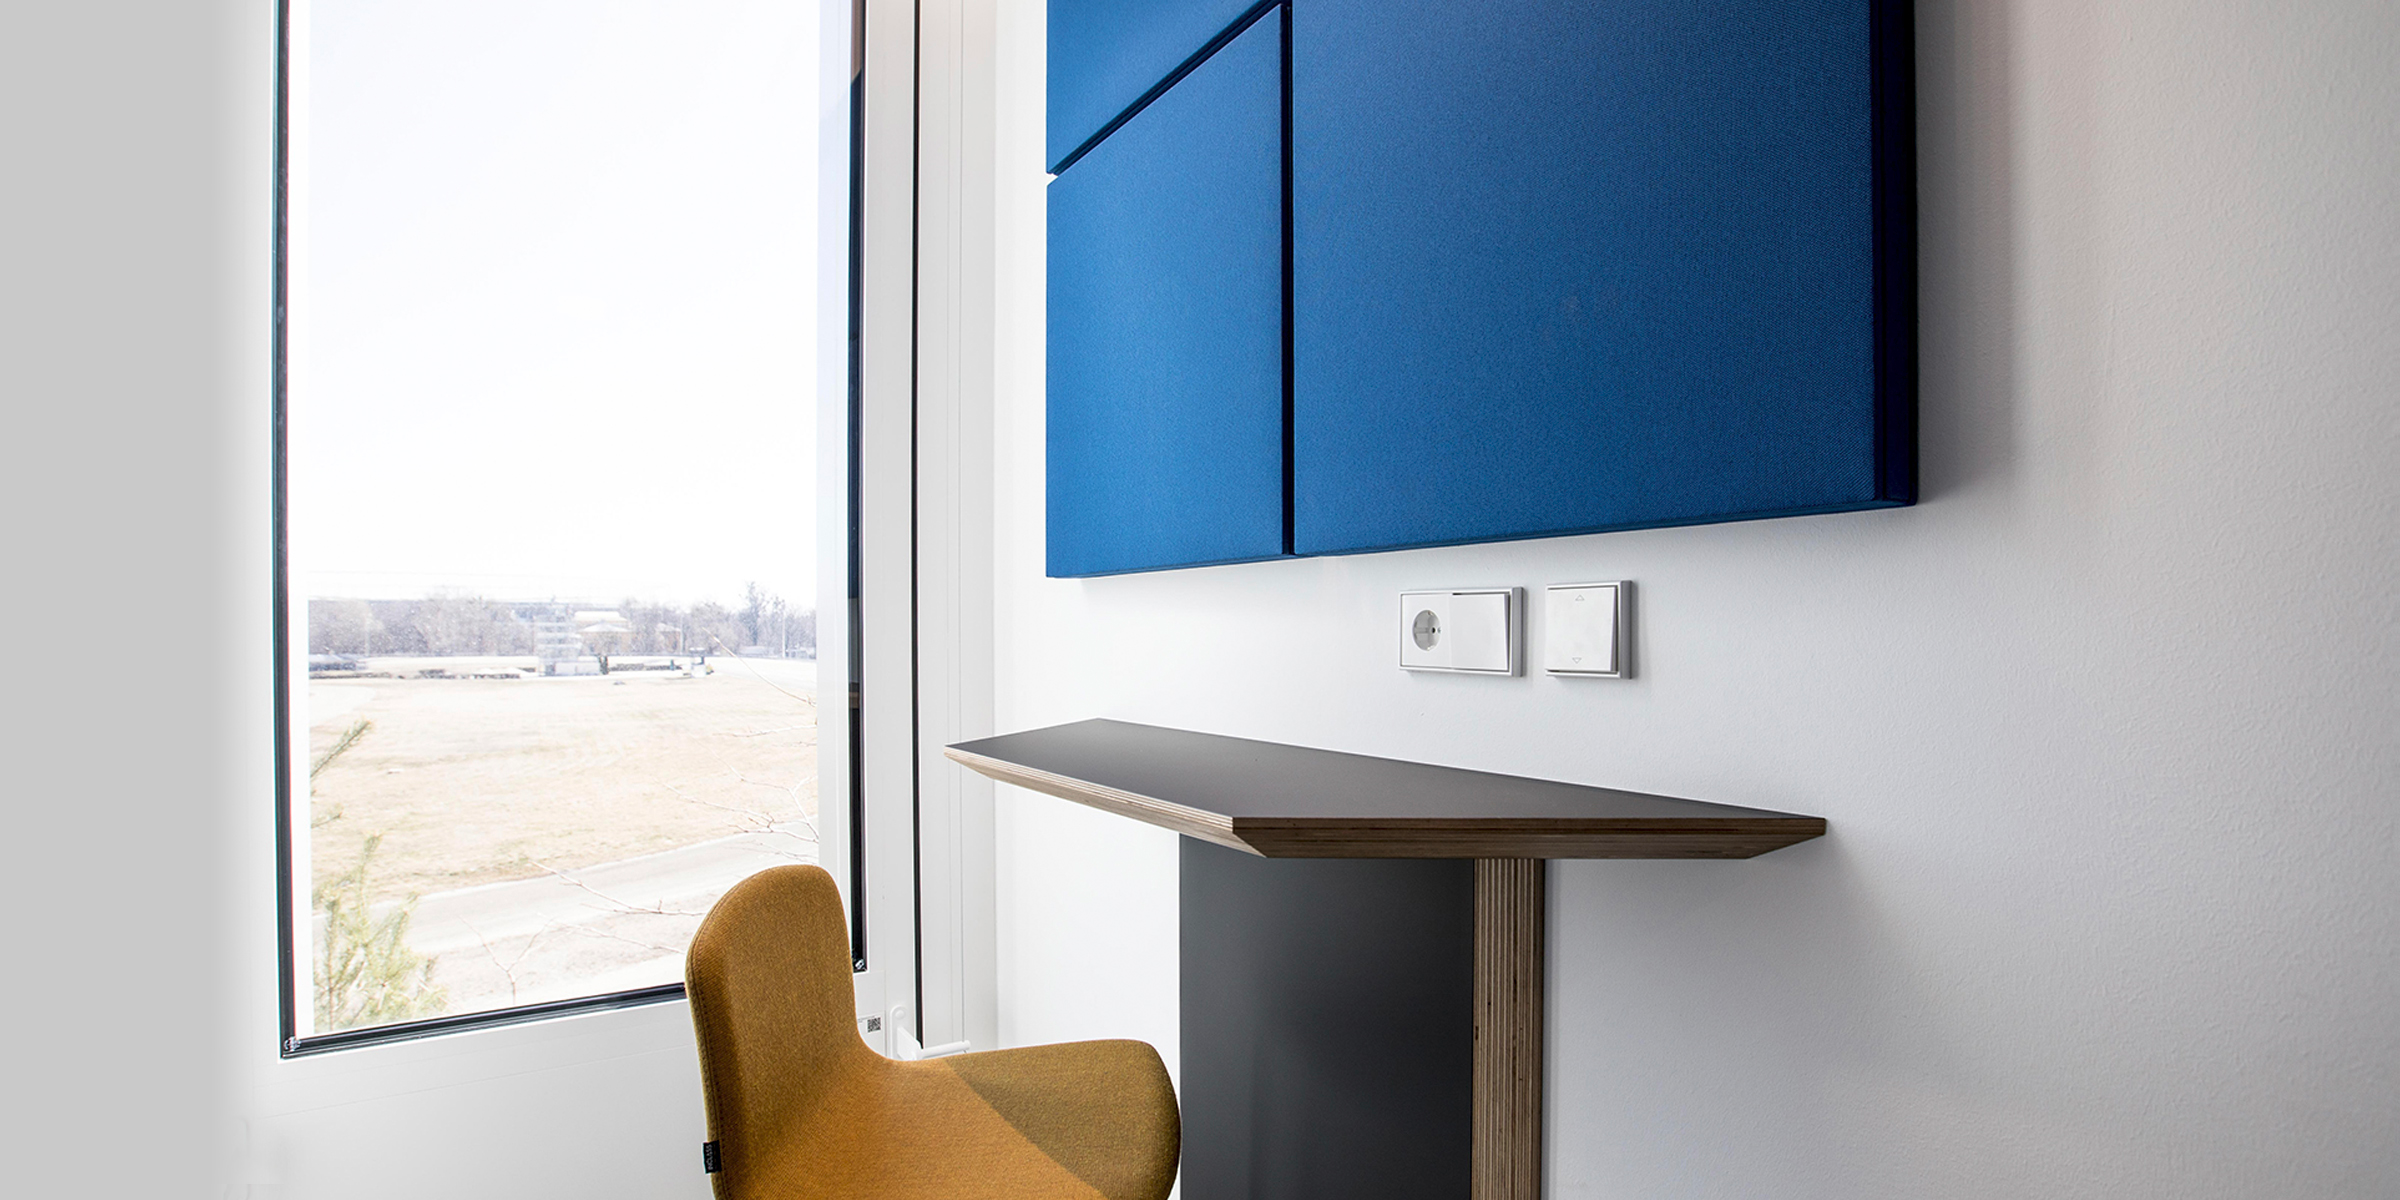 Ein minimalistisch eingerichtetes Büro mit einem großen Fenster, durch das man eine Aussicht auf eine flache Landschaft hat. An der Wand hängt ein großes, blaues Schallabsorptionspaneel und darunter befindet sich ein schmaler Schreibtisch mit einer braunen Sitzschale. An der Wand ist ein weißer Lichtschalter zu sehen.